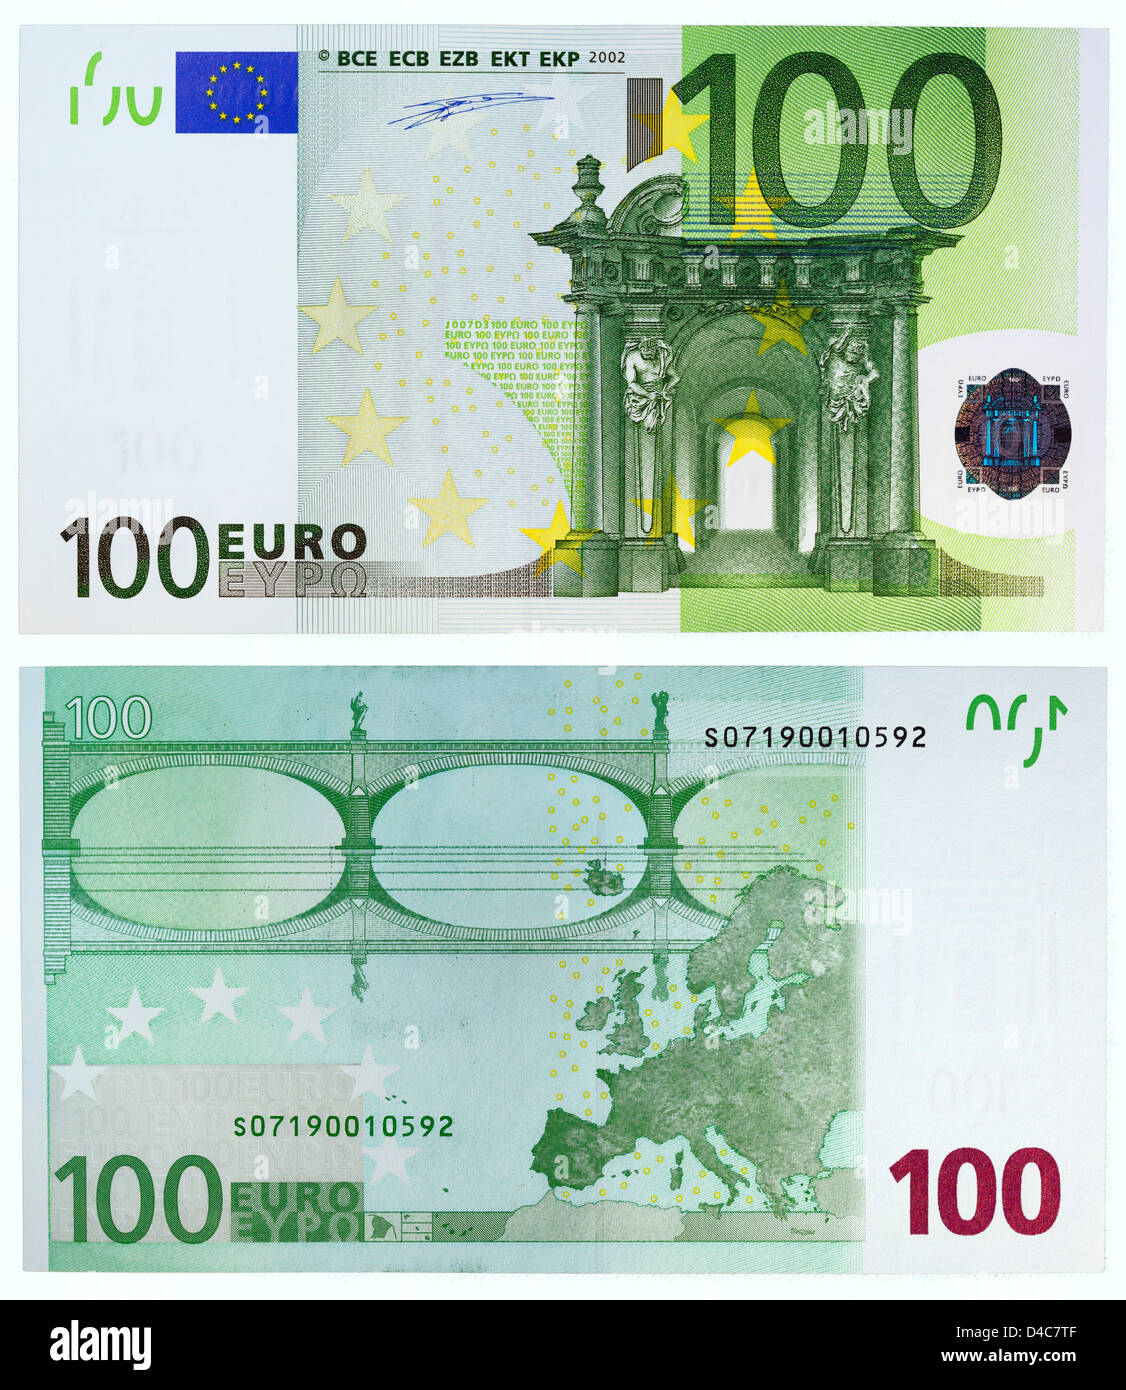 Banconota da 100 euro immagini e fotografie stock ad alta risoluzione -  Alamy